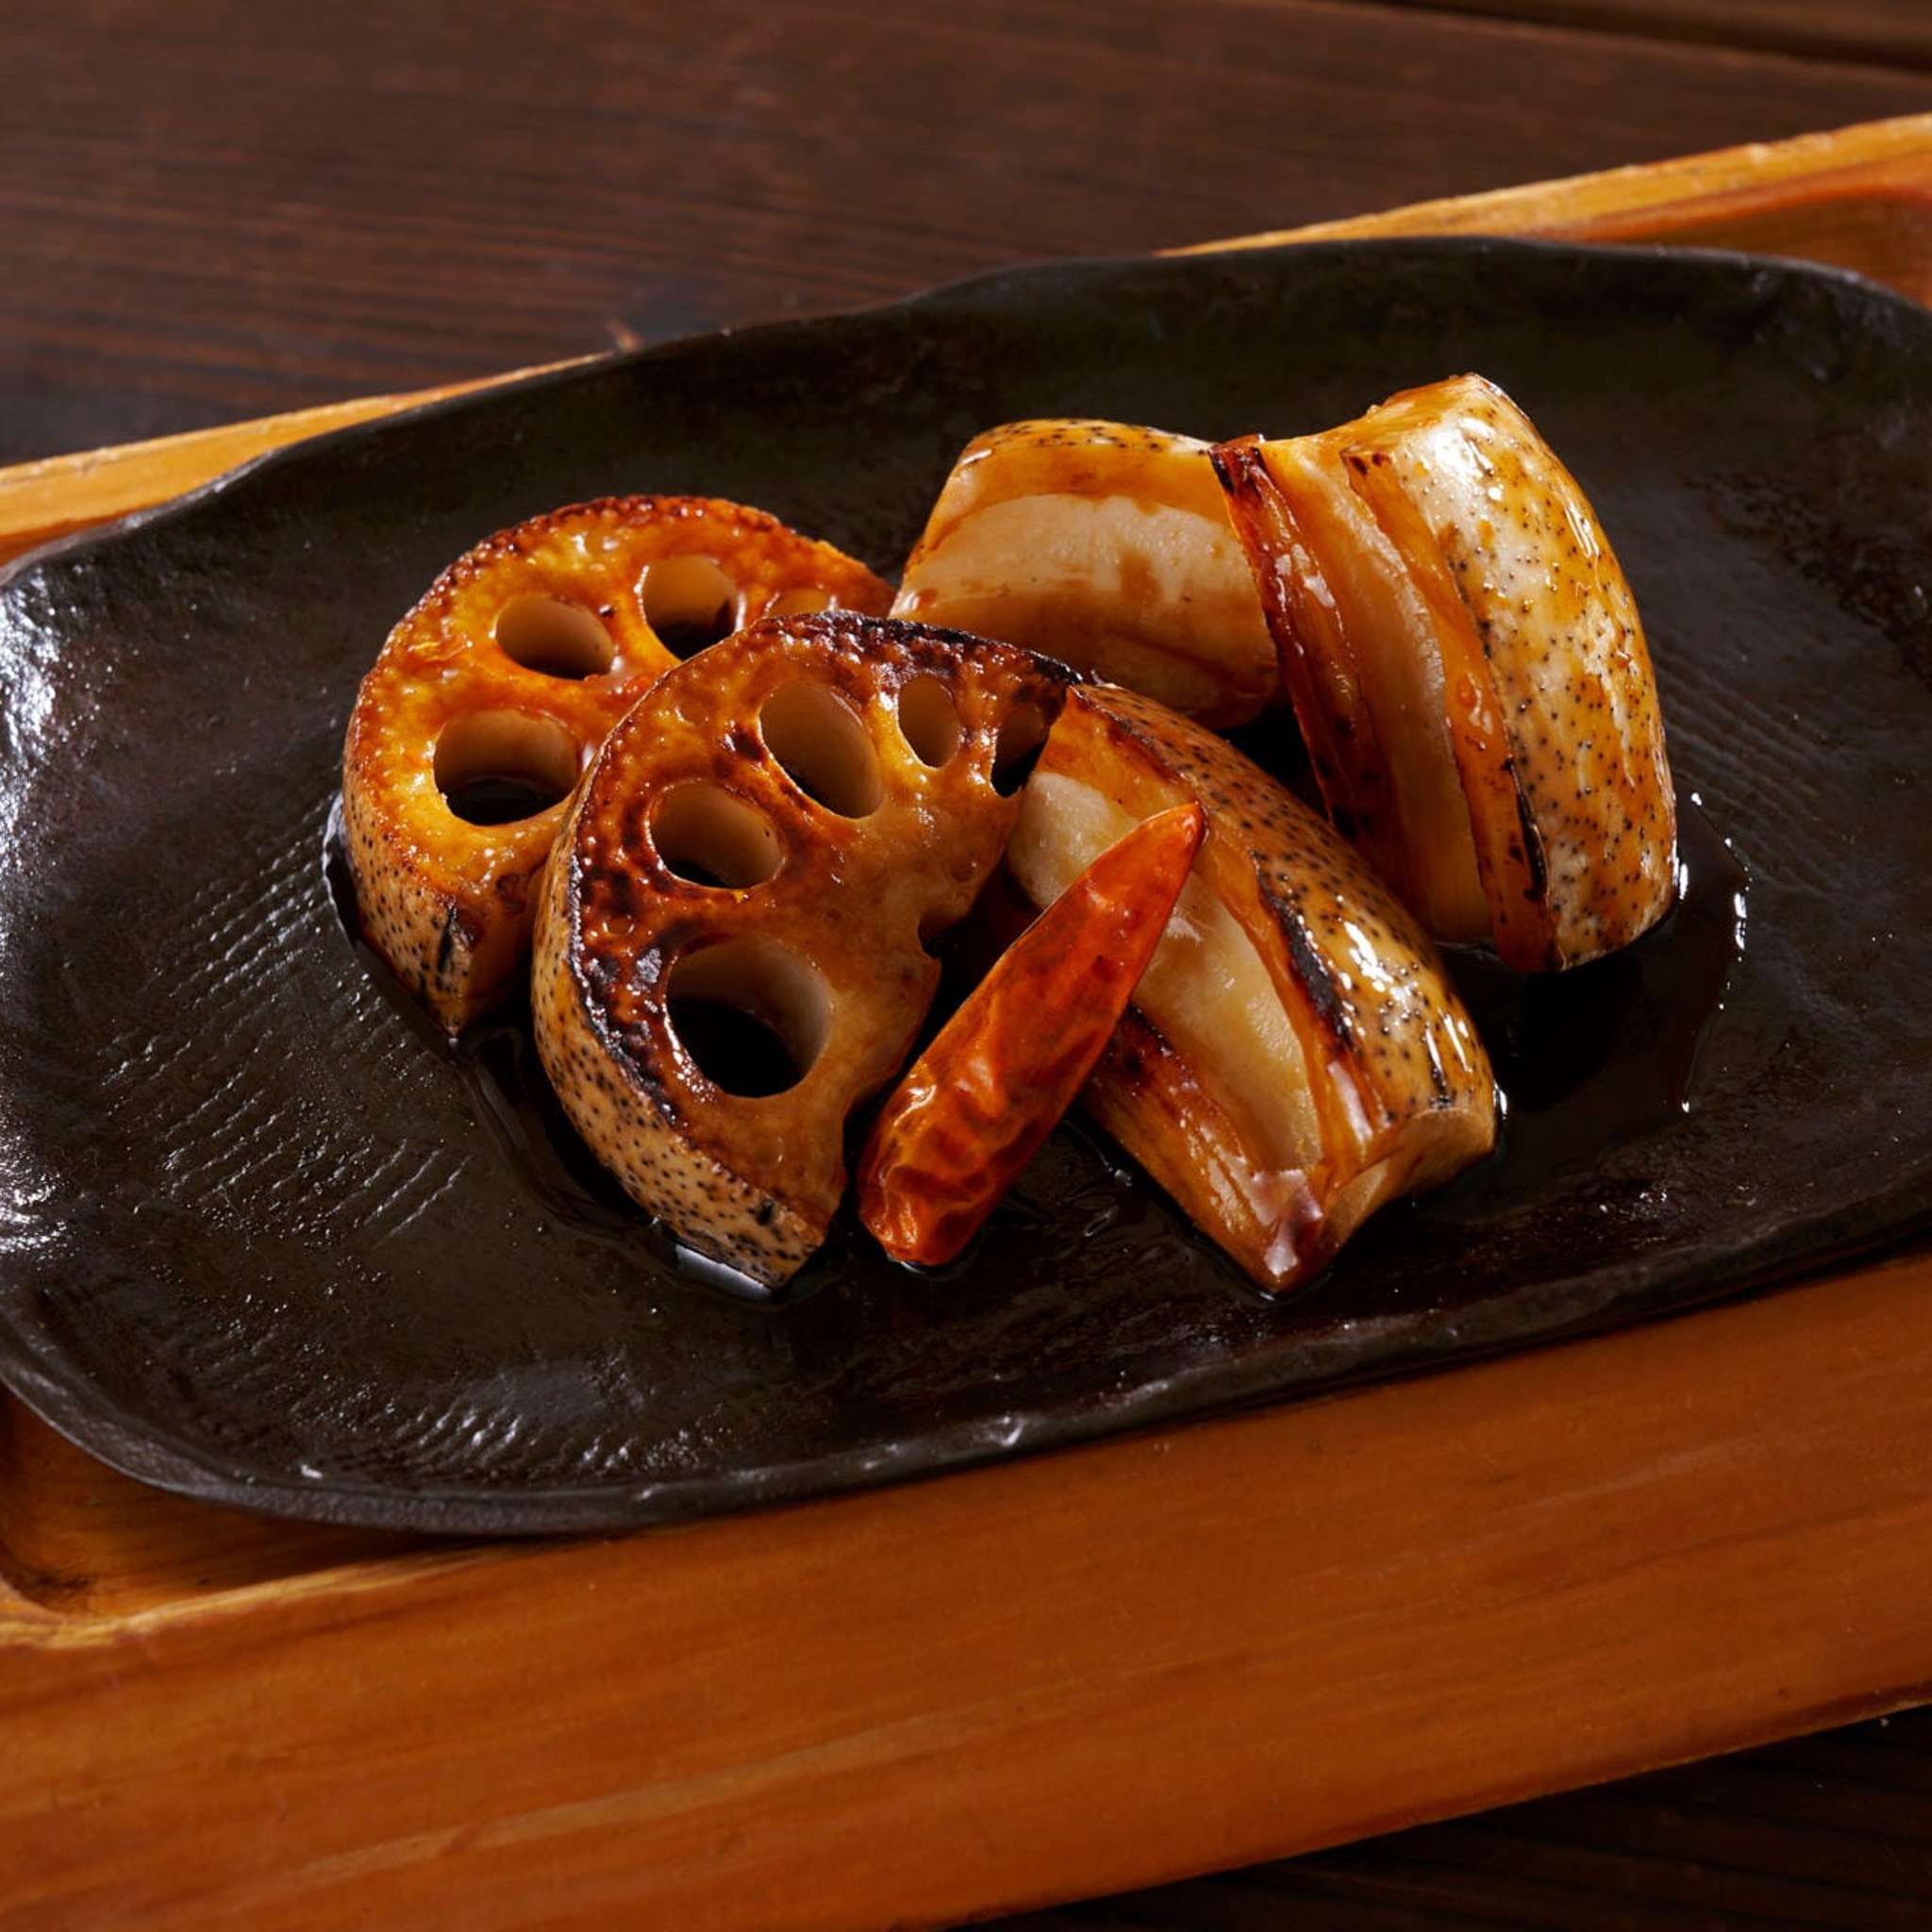 琵琶湖からすま蓮根唐辛子醤油焼き
～滋賀伝統野菜　弥平とうがらし使用～